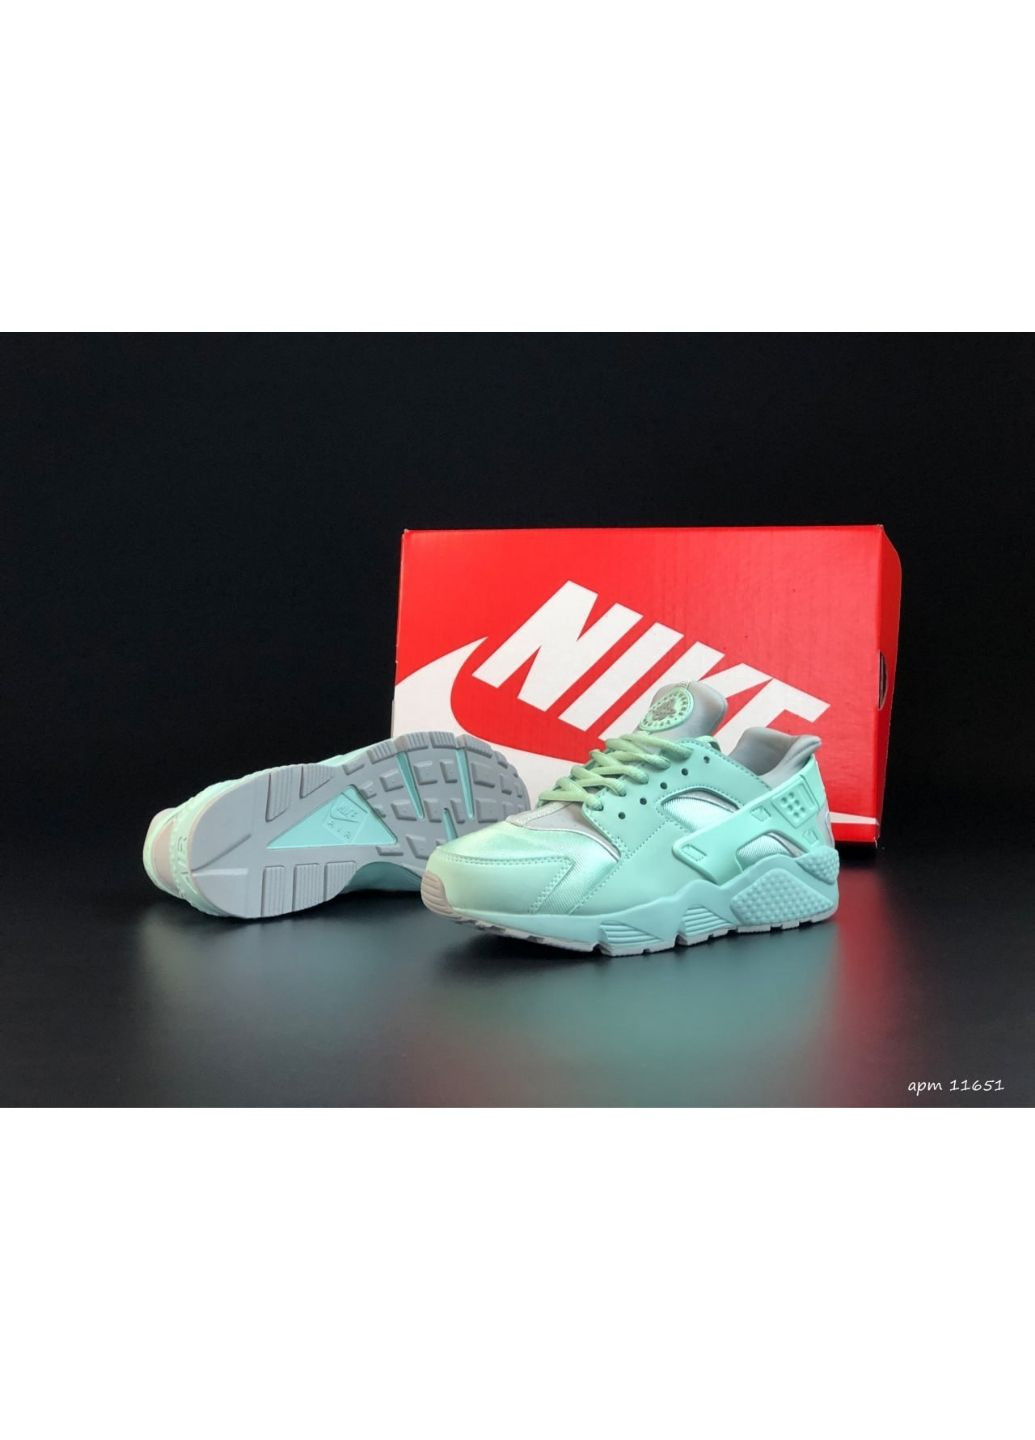 Мятные демисезонные женские кроссовки мятные «no name» Nike Huarache